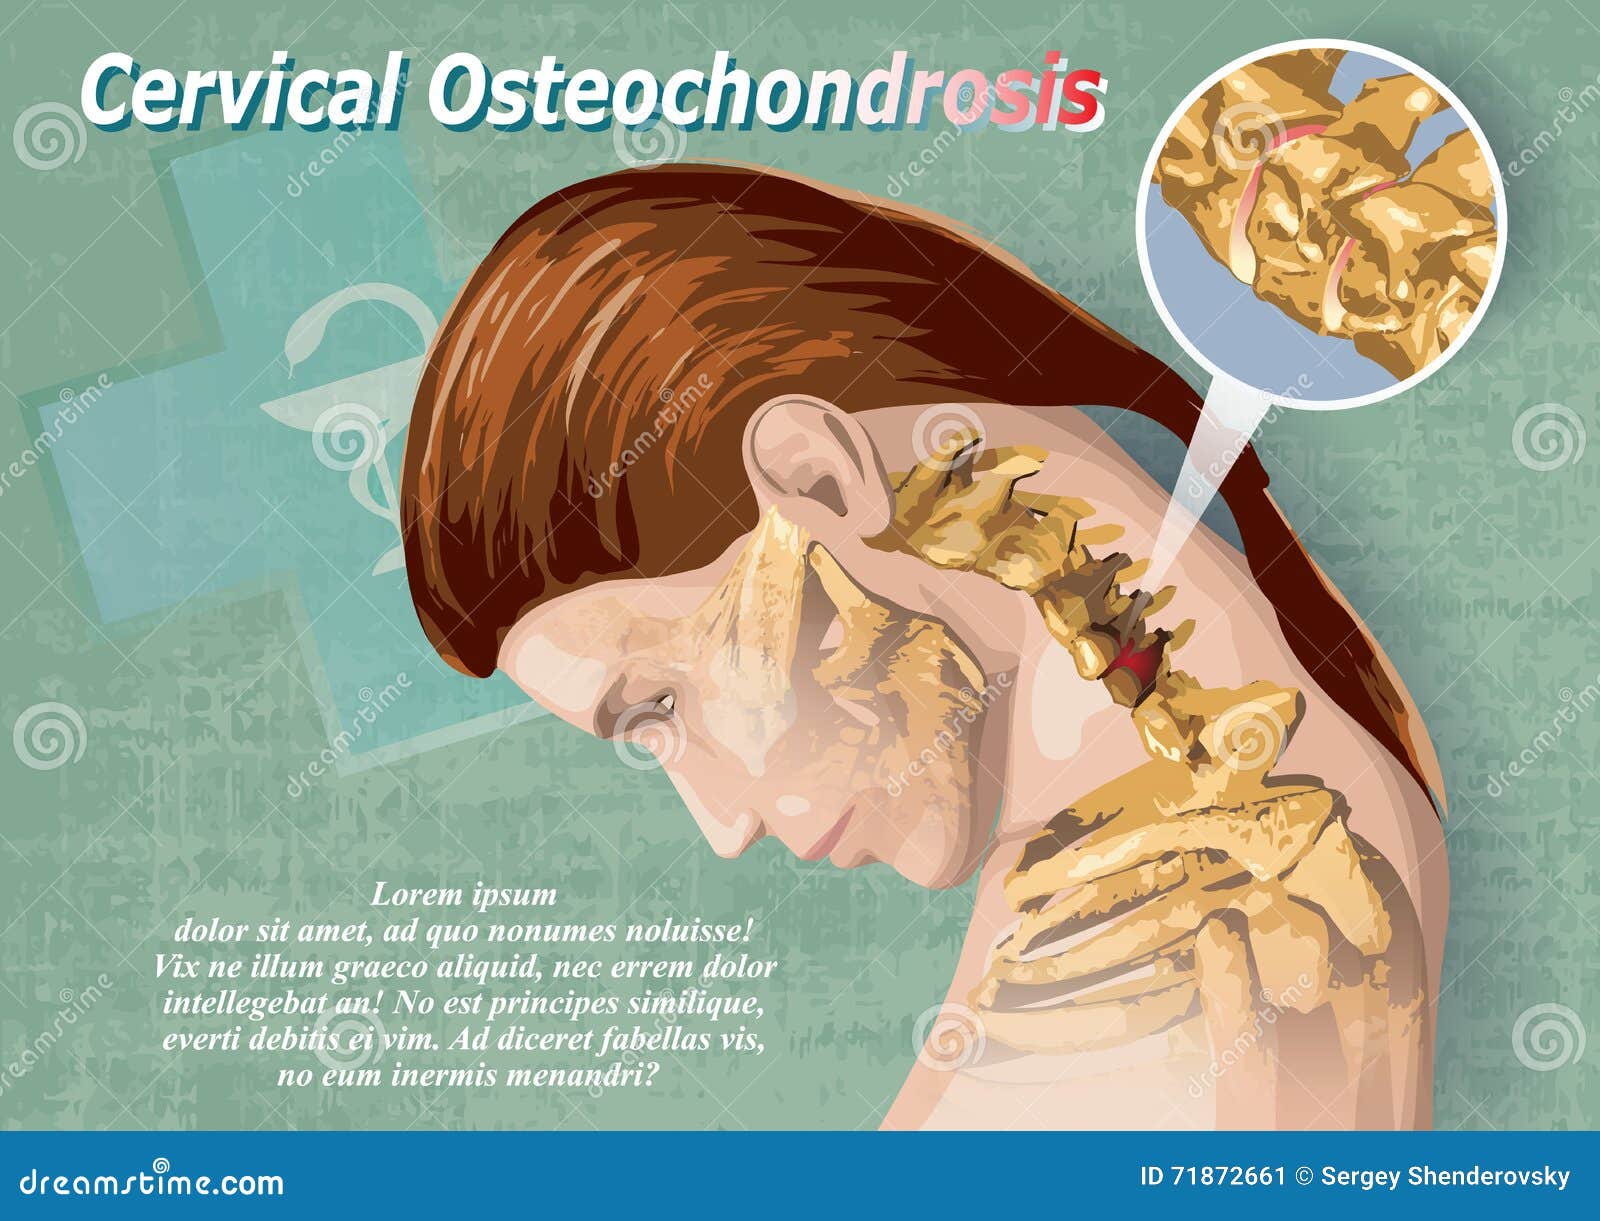 Nyaki osteochondrosis spondylosis arthrosis kezelése - tatraerembolt.hu, Osteochondrosis neck treatment